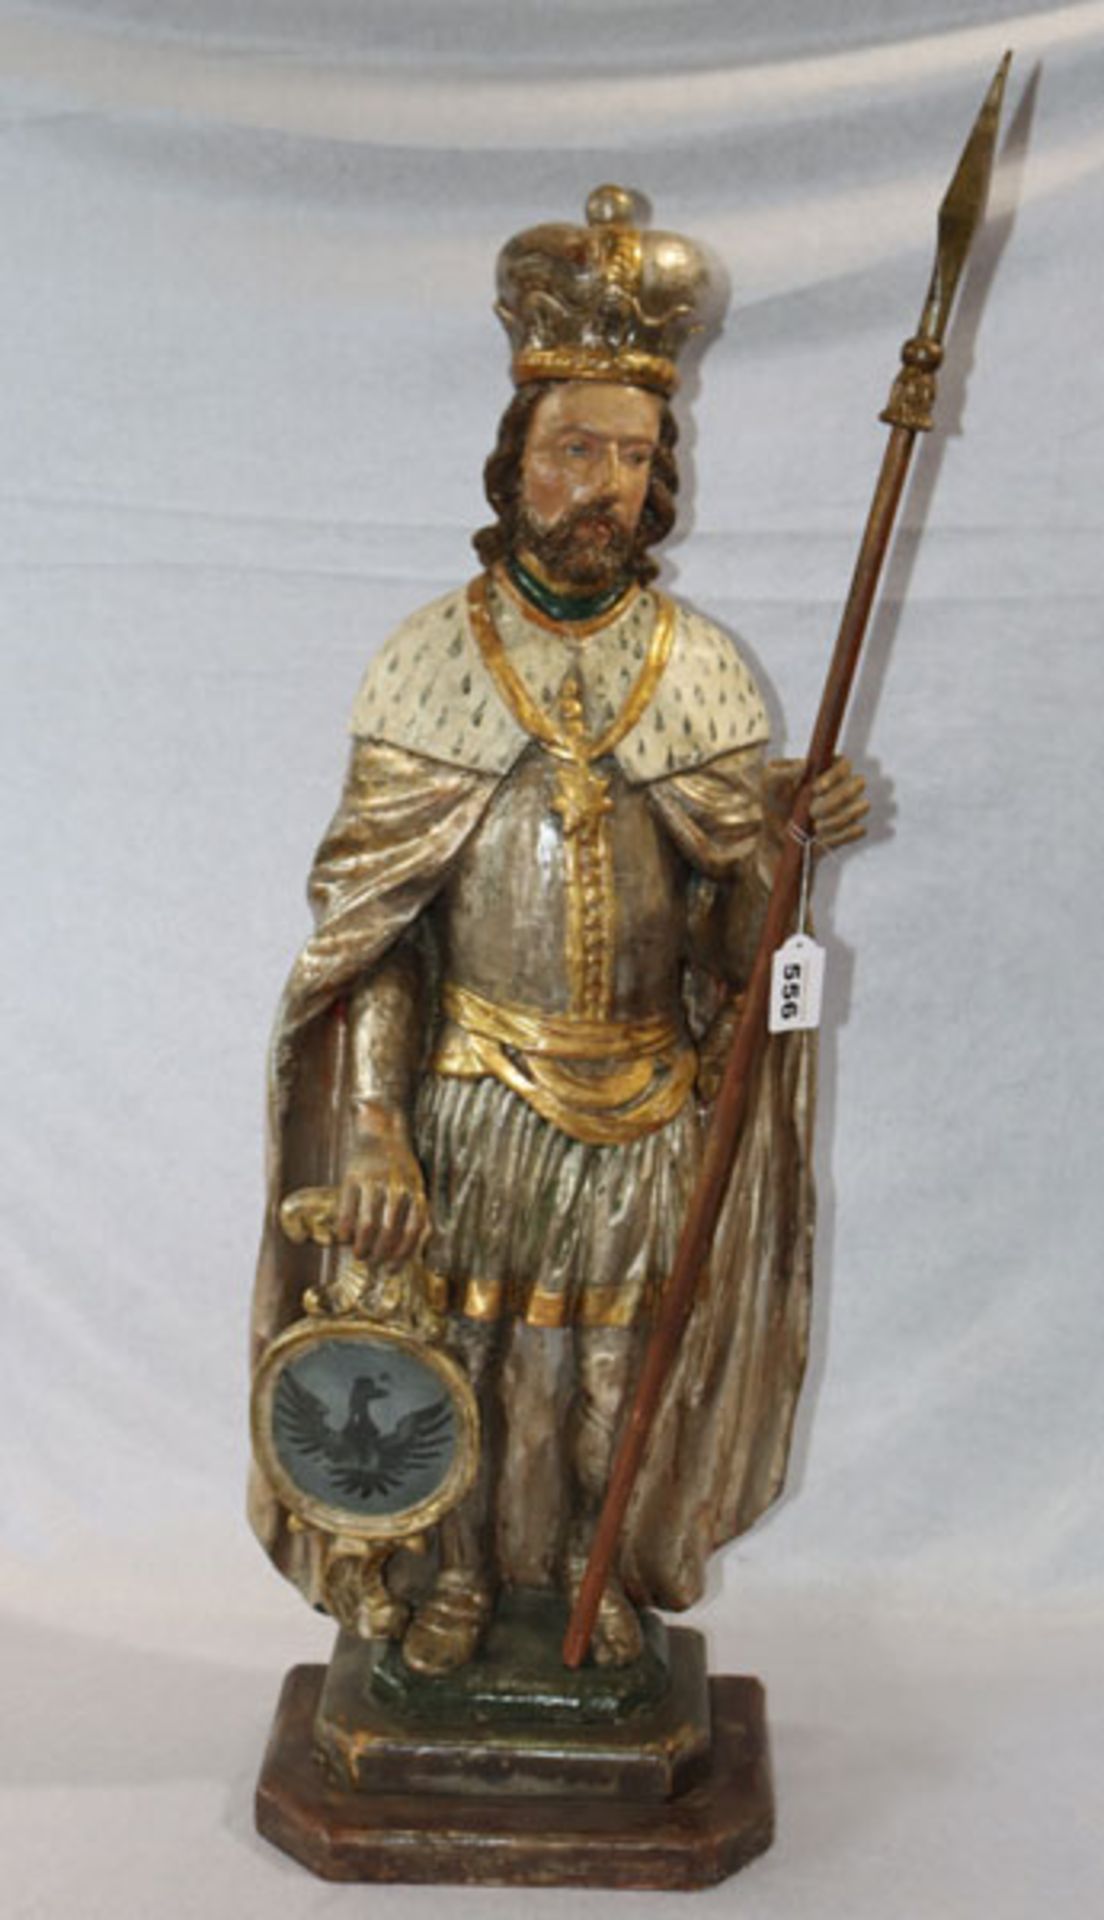 Holz Figurenskulptur 'König mit Lanze', farbig gefaßt, H 90 cm, leicht bestossen und berieben,